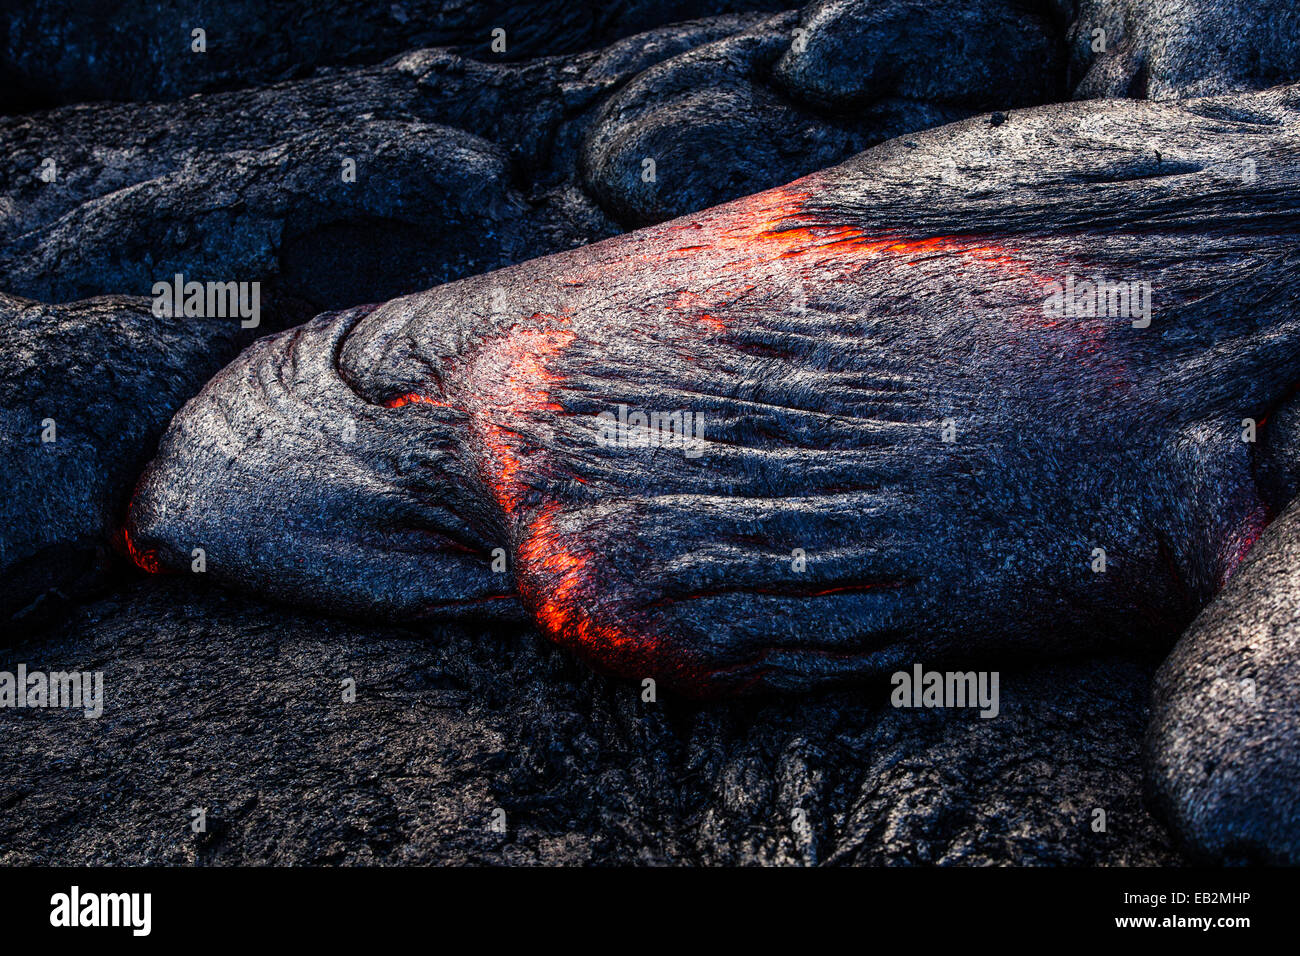 Puʻu ʻŌʻō vulcano, eruzione vulcanica, incandescente hot lava fluente, Volcanoes-Nationalpark, Big Island, Hawaii, Stati Uniti Foto Stock